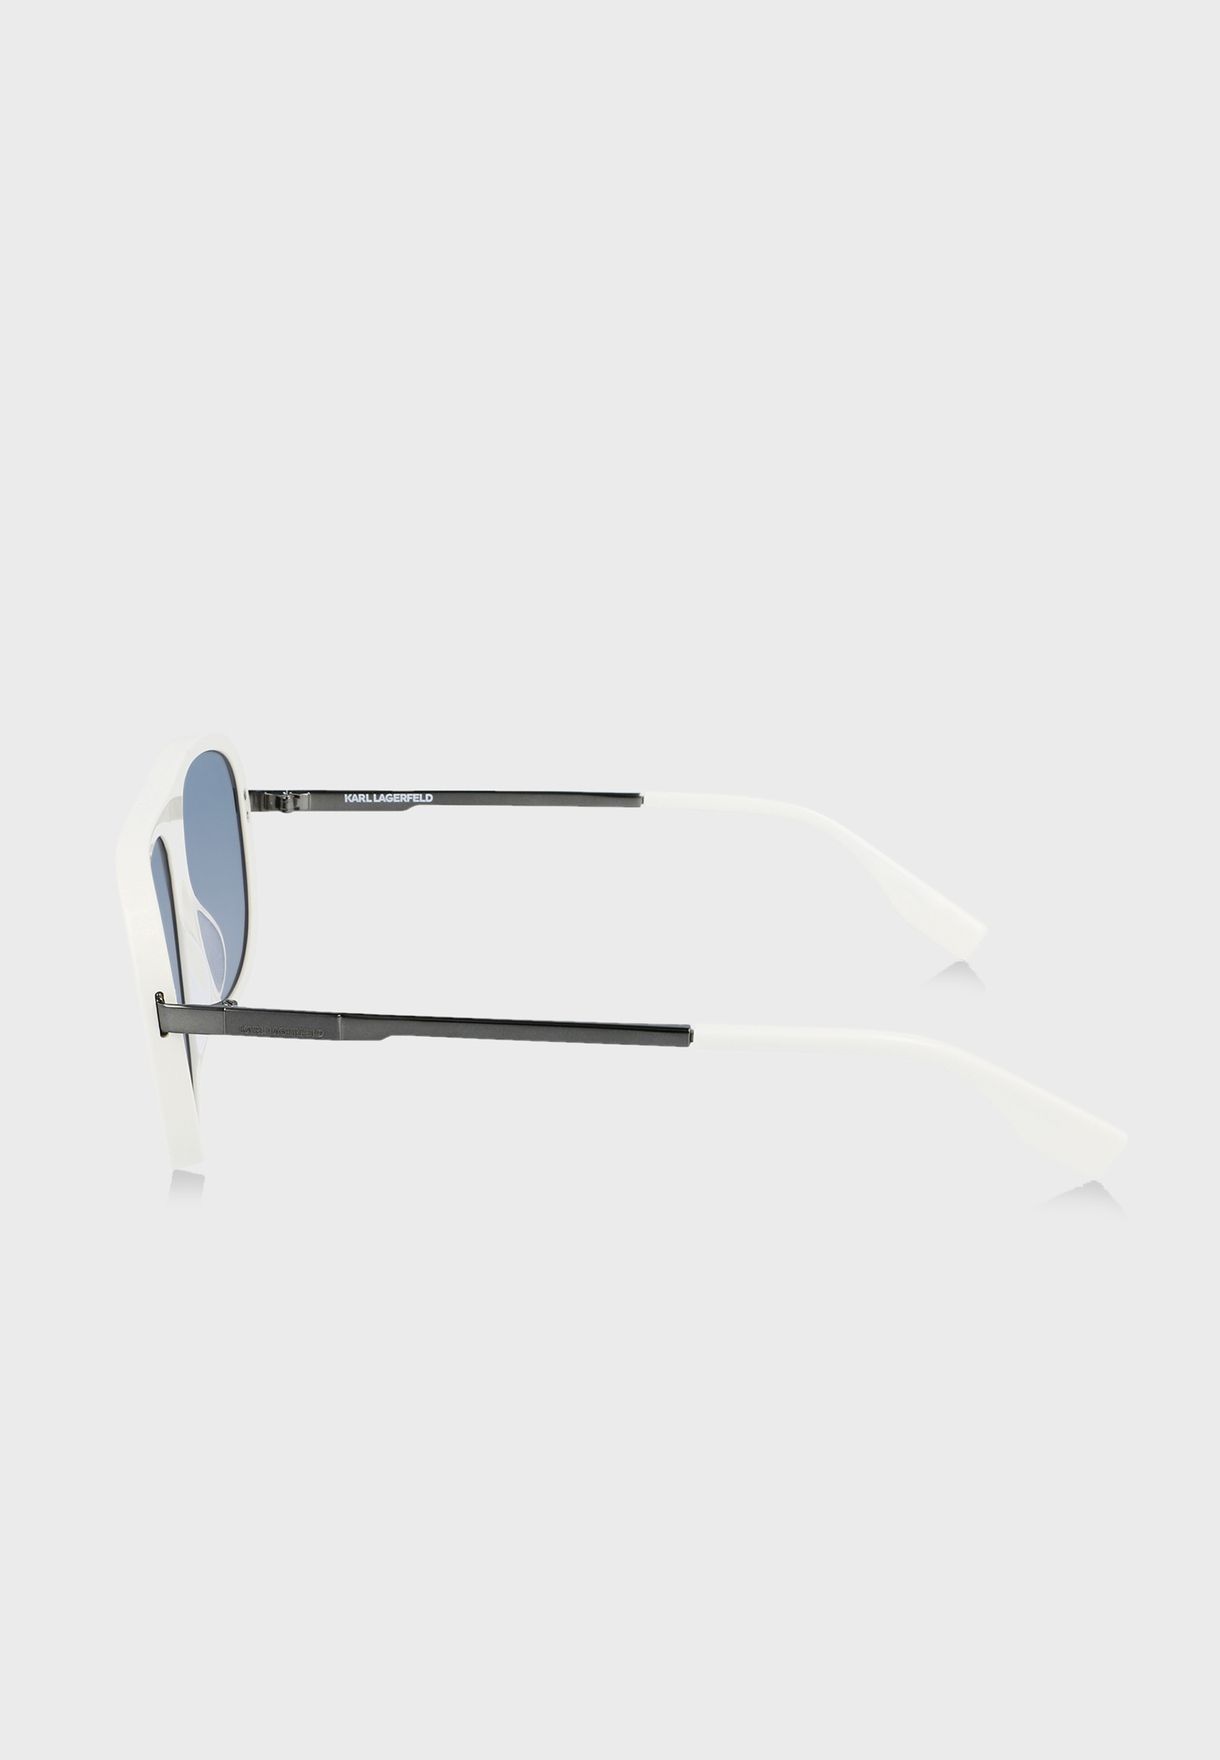 Kl6032S Wayferer Sunglasses